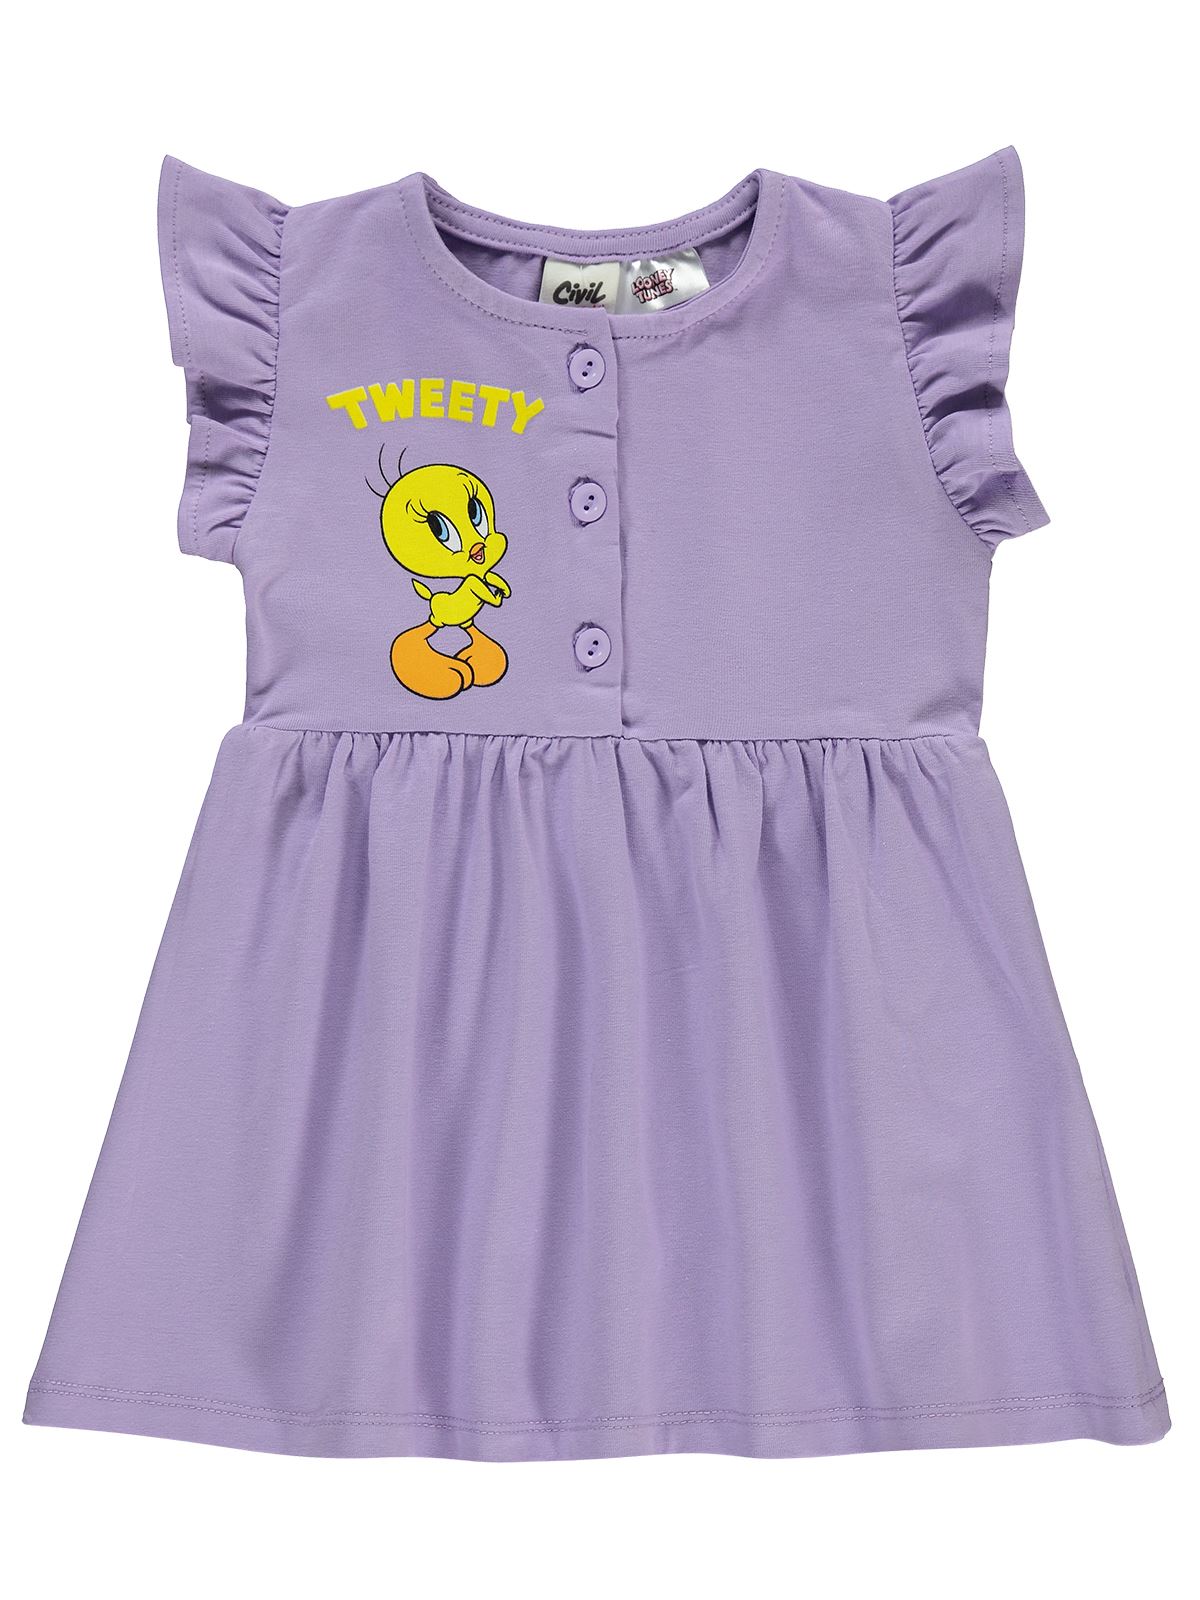 Tweety Kız Bebek Elbise 6-18 Ay Lila